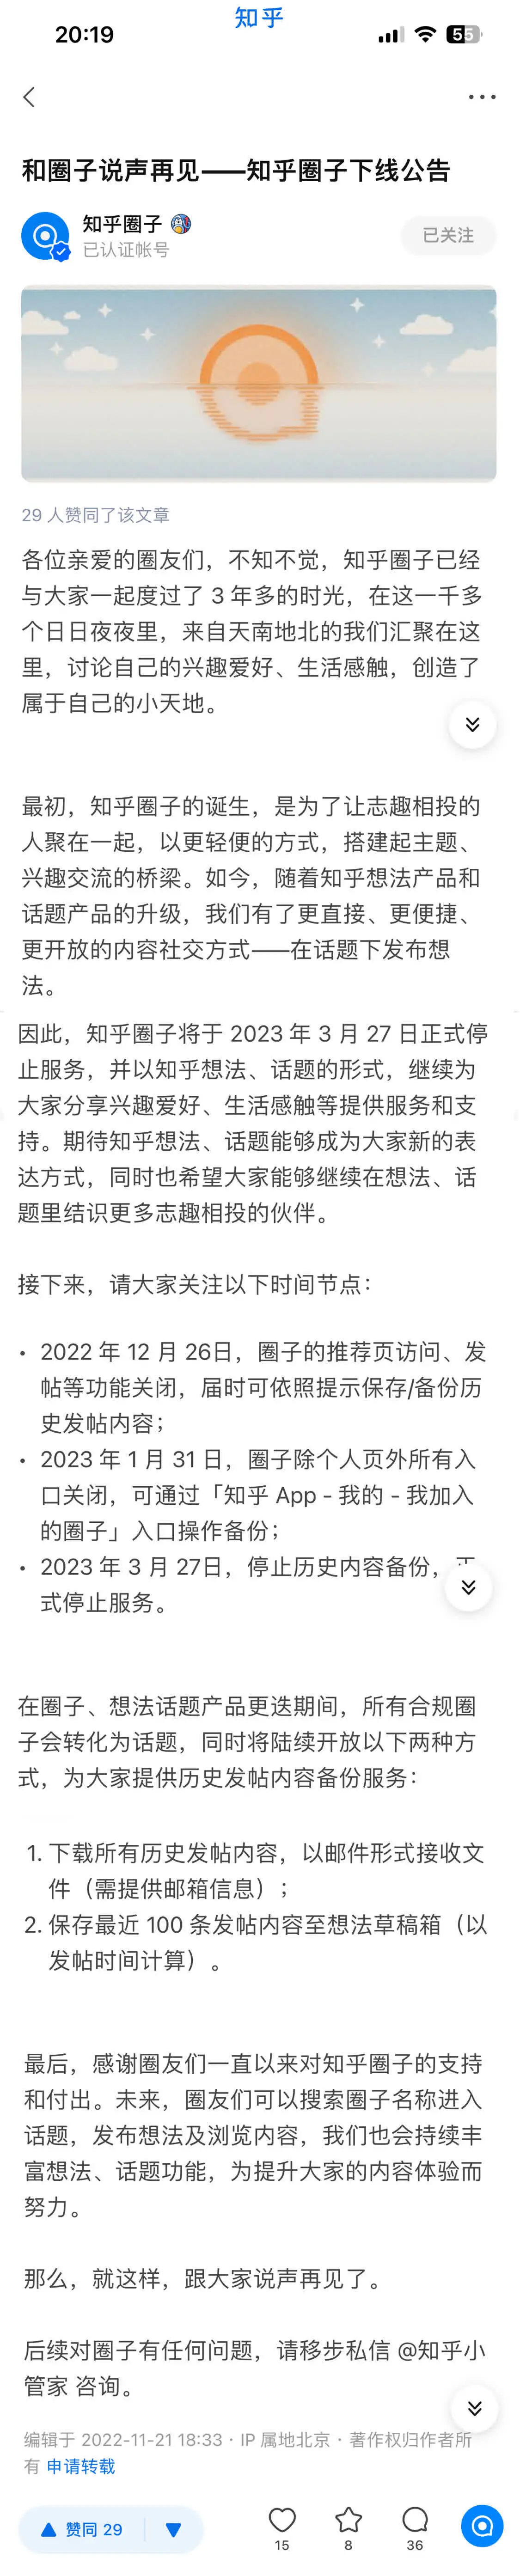 知乎圈子宣布2023年3月27日停止服务